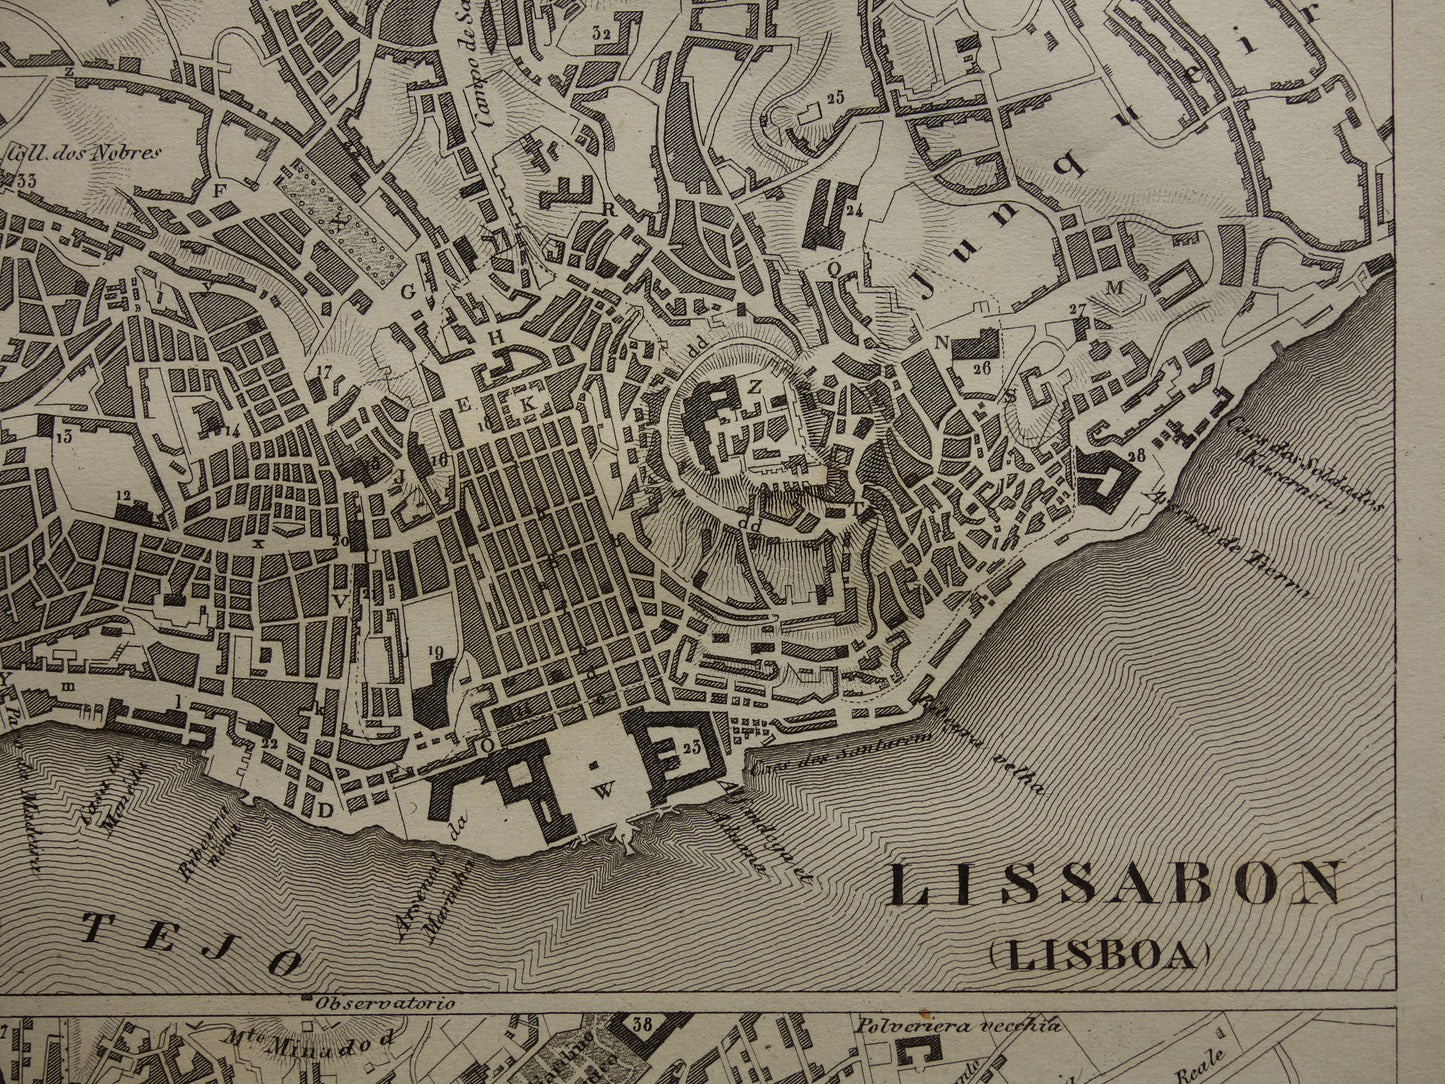 Lissabon en Napels antieke plattegrond 170+ jaar oude kaart van Lisboa Napoli uit 1849 - originele vintage kaarten